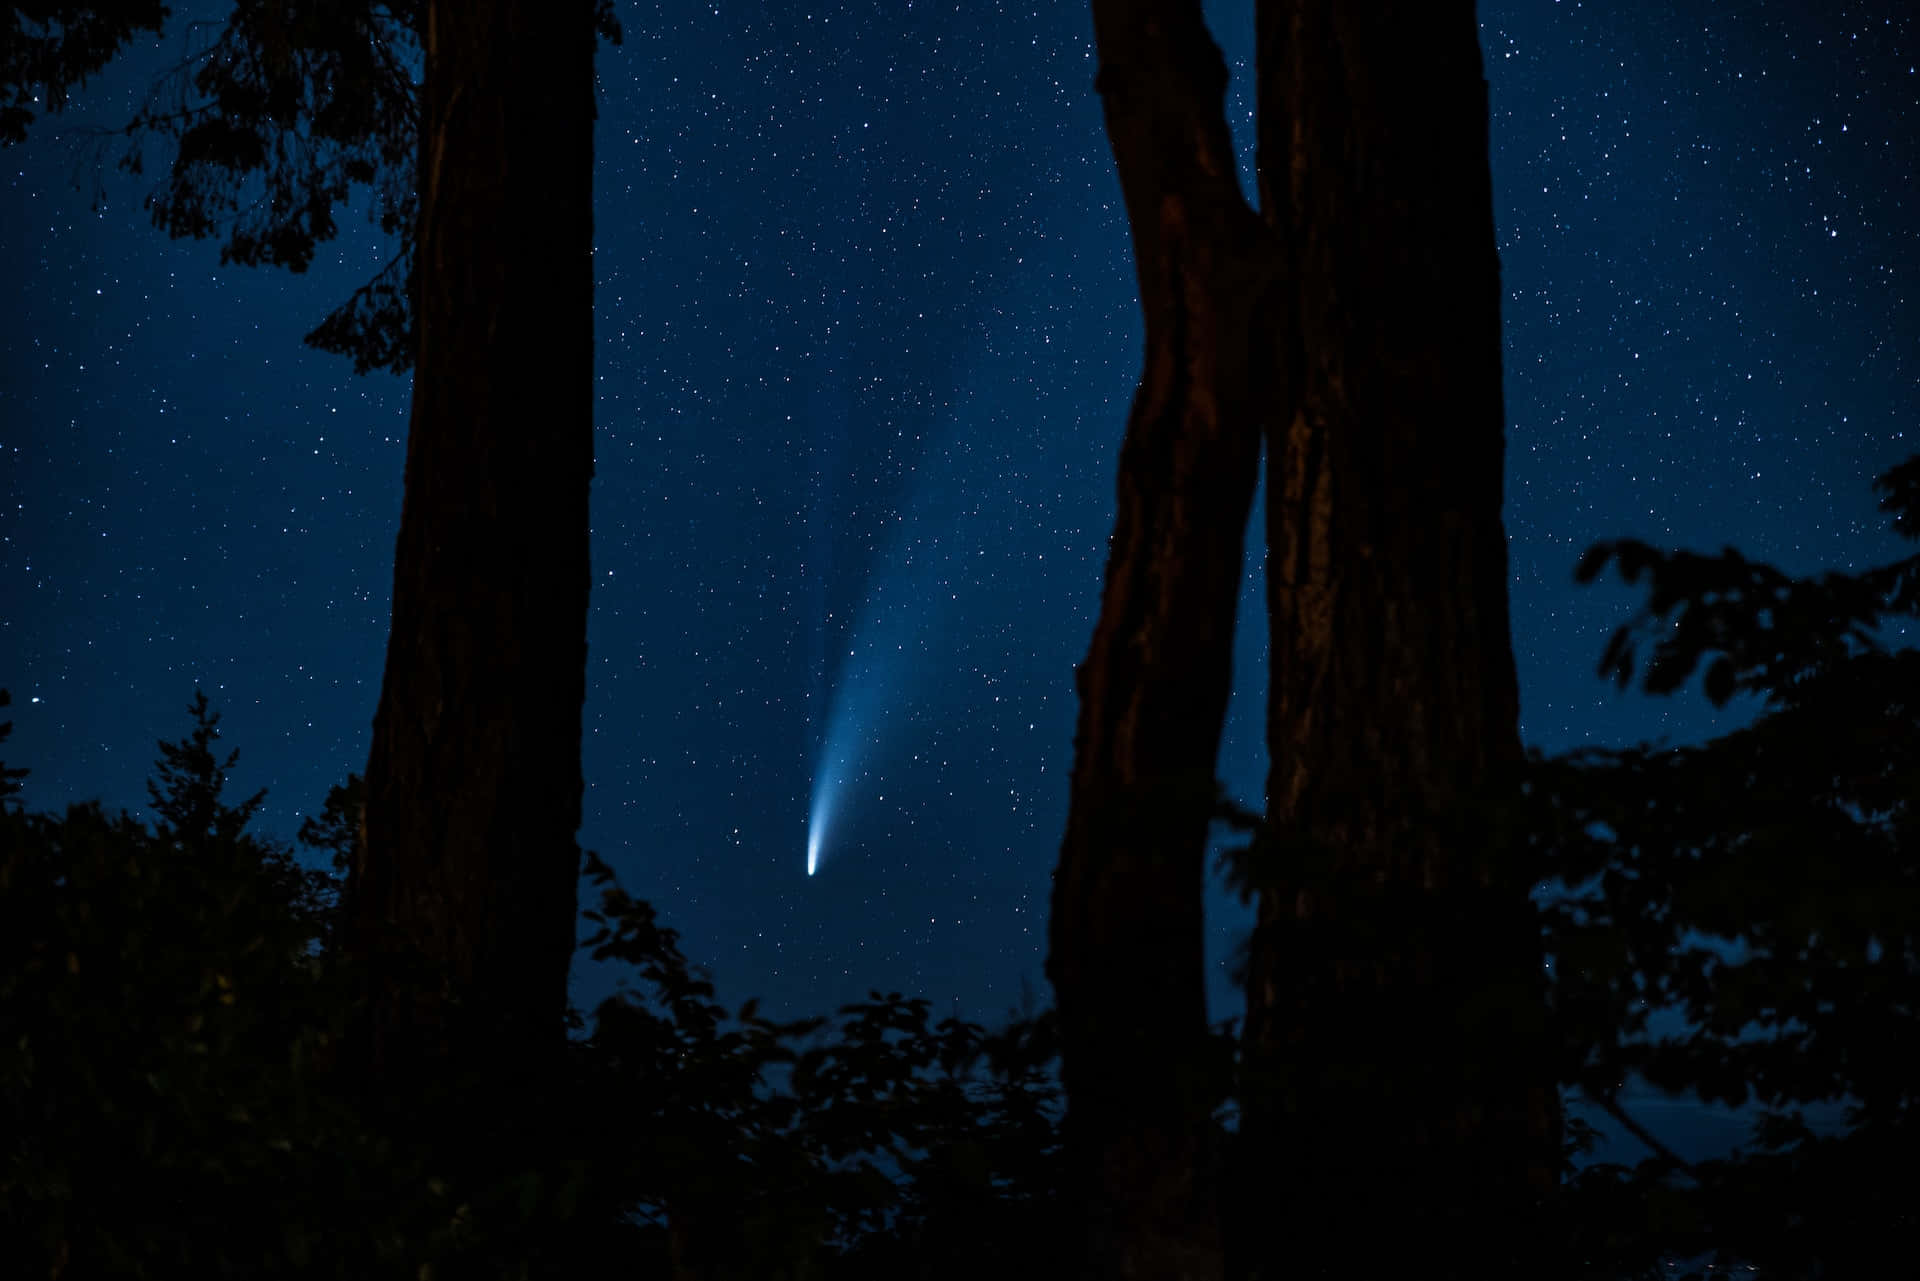 Stunning Comet in the Night Sky Wallpaper